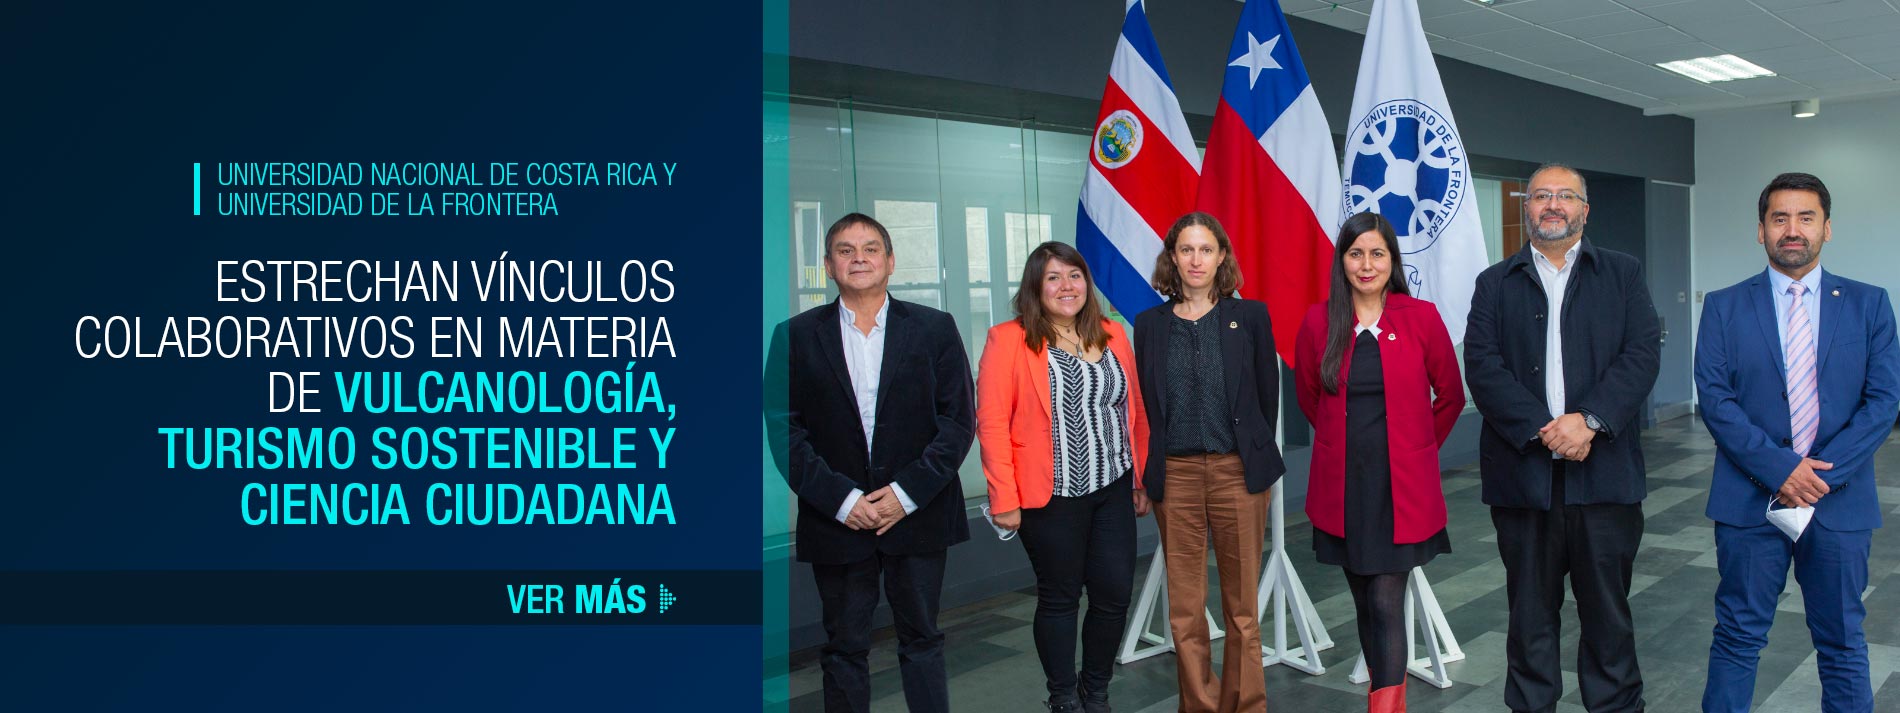 Universidad Nacional de Costa Rica y Universidad de La Frontera estrechan vínculos colaborativos en materia de vulcanología, turismo sostenible y ciencia ciudadana.